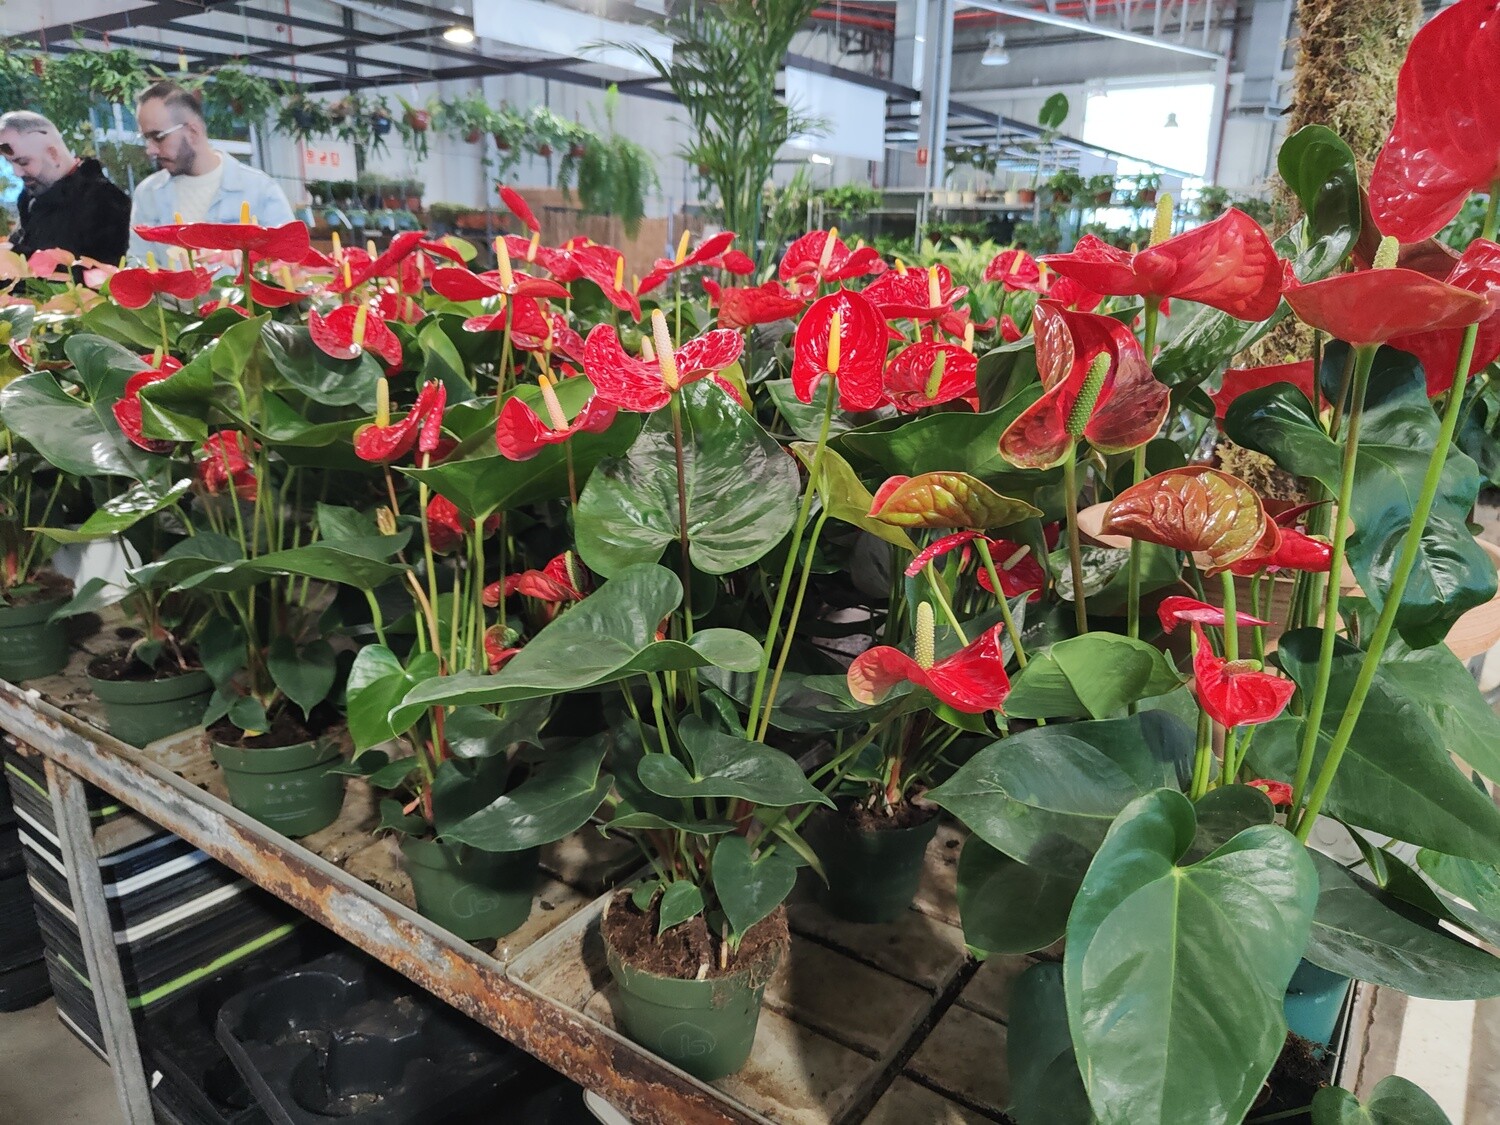 "AmaPlant Anturio rojo" frondoso y repleto de corazones, la flor del amor de pequeños corazones 50 cm M14 (floreciente) - Interior con luz natural sin sol directo - ENVIO INCLUIDO